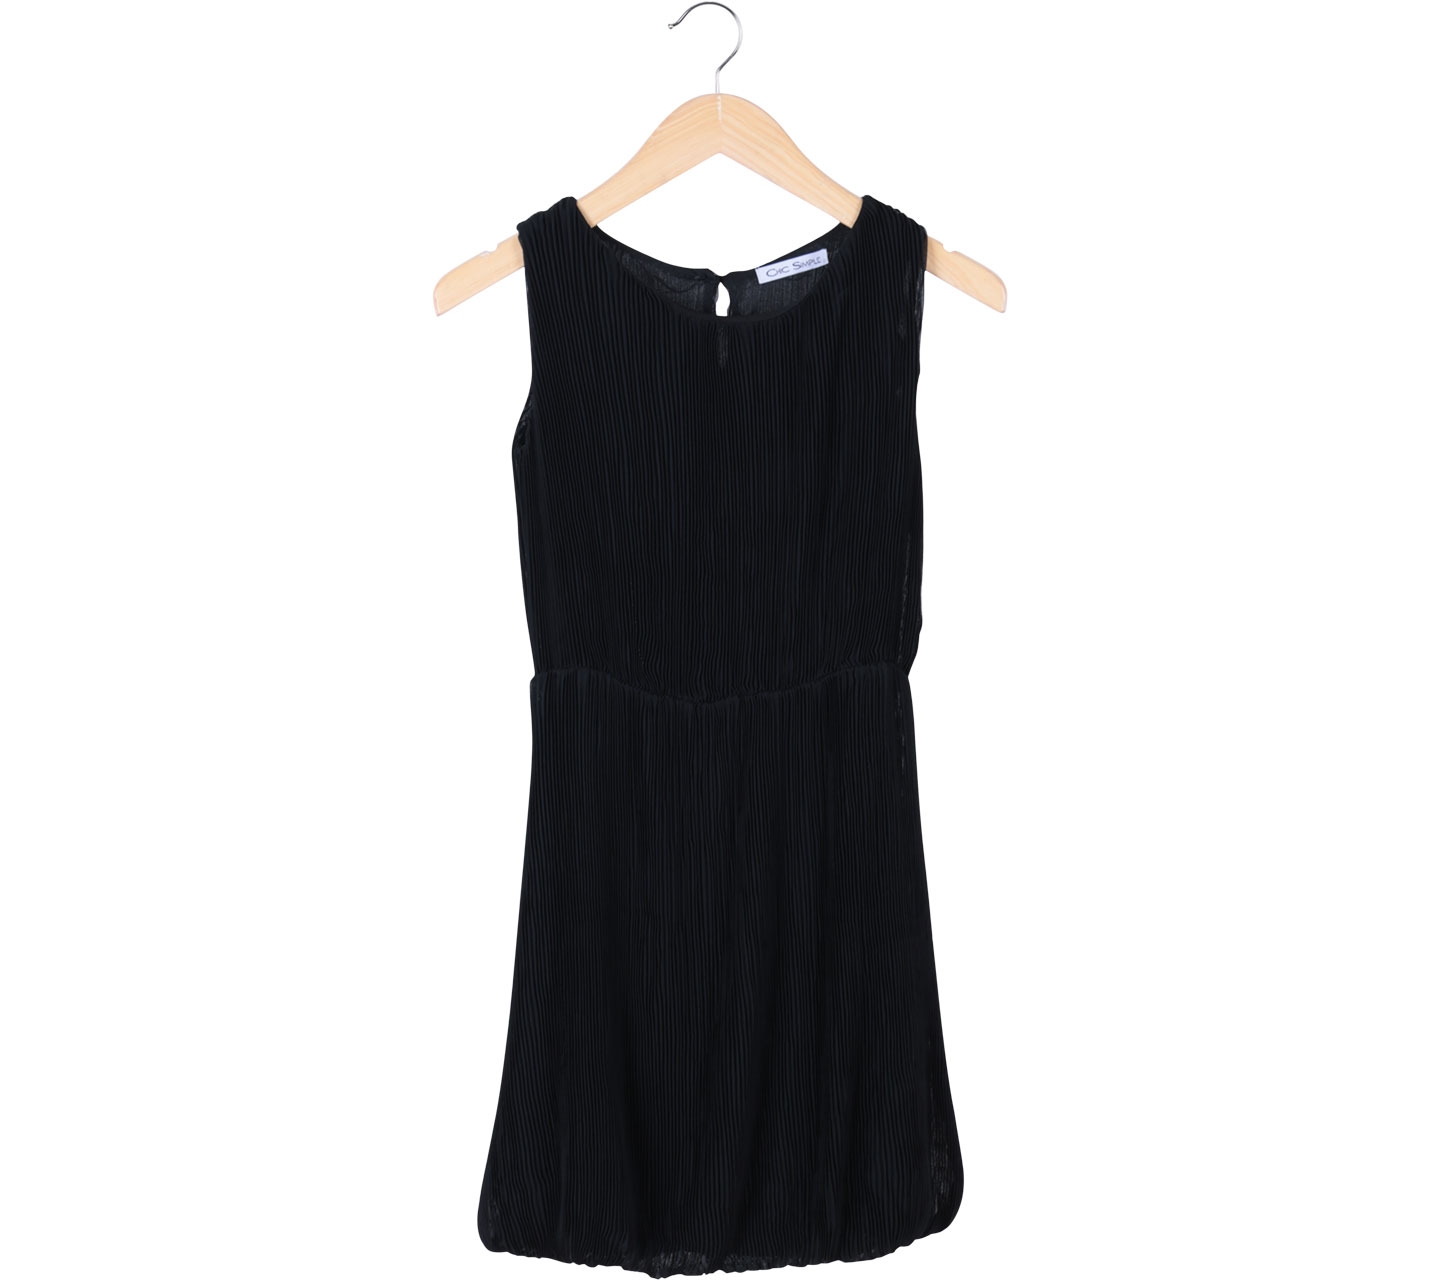 Chic Simple Black Pleated Sleeveless Mini Dress